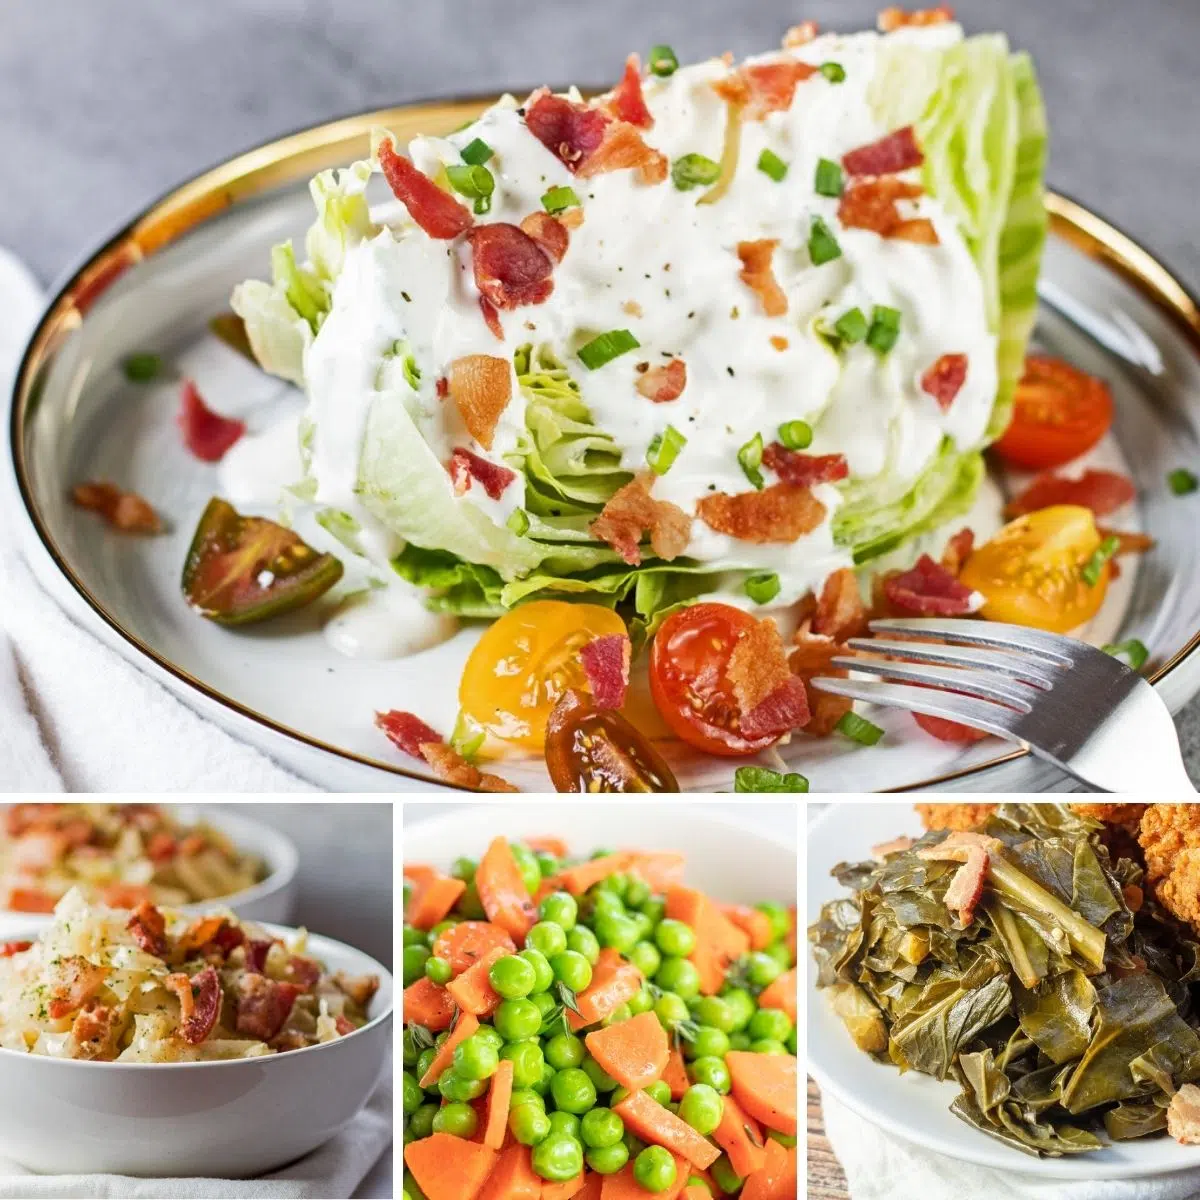 किसी भी भोजन के साथ परोसने के लिए सर्वश्रेष्ठ वेजिटेबल साइड डिश, जैसा कि कोलाज इमेज में इन 4 विशेष रुप से प्रदर्शित व्यंजनों के साथ दिखाया गया है।